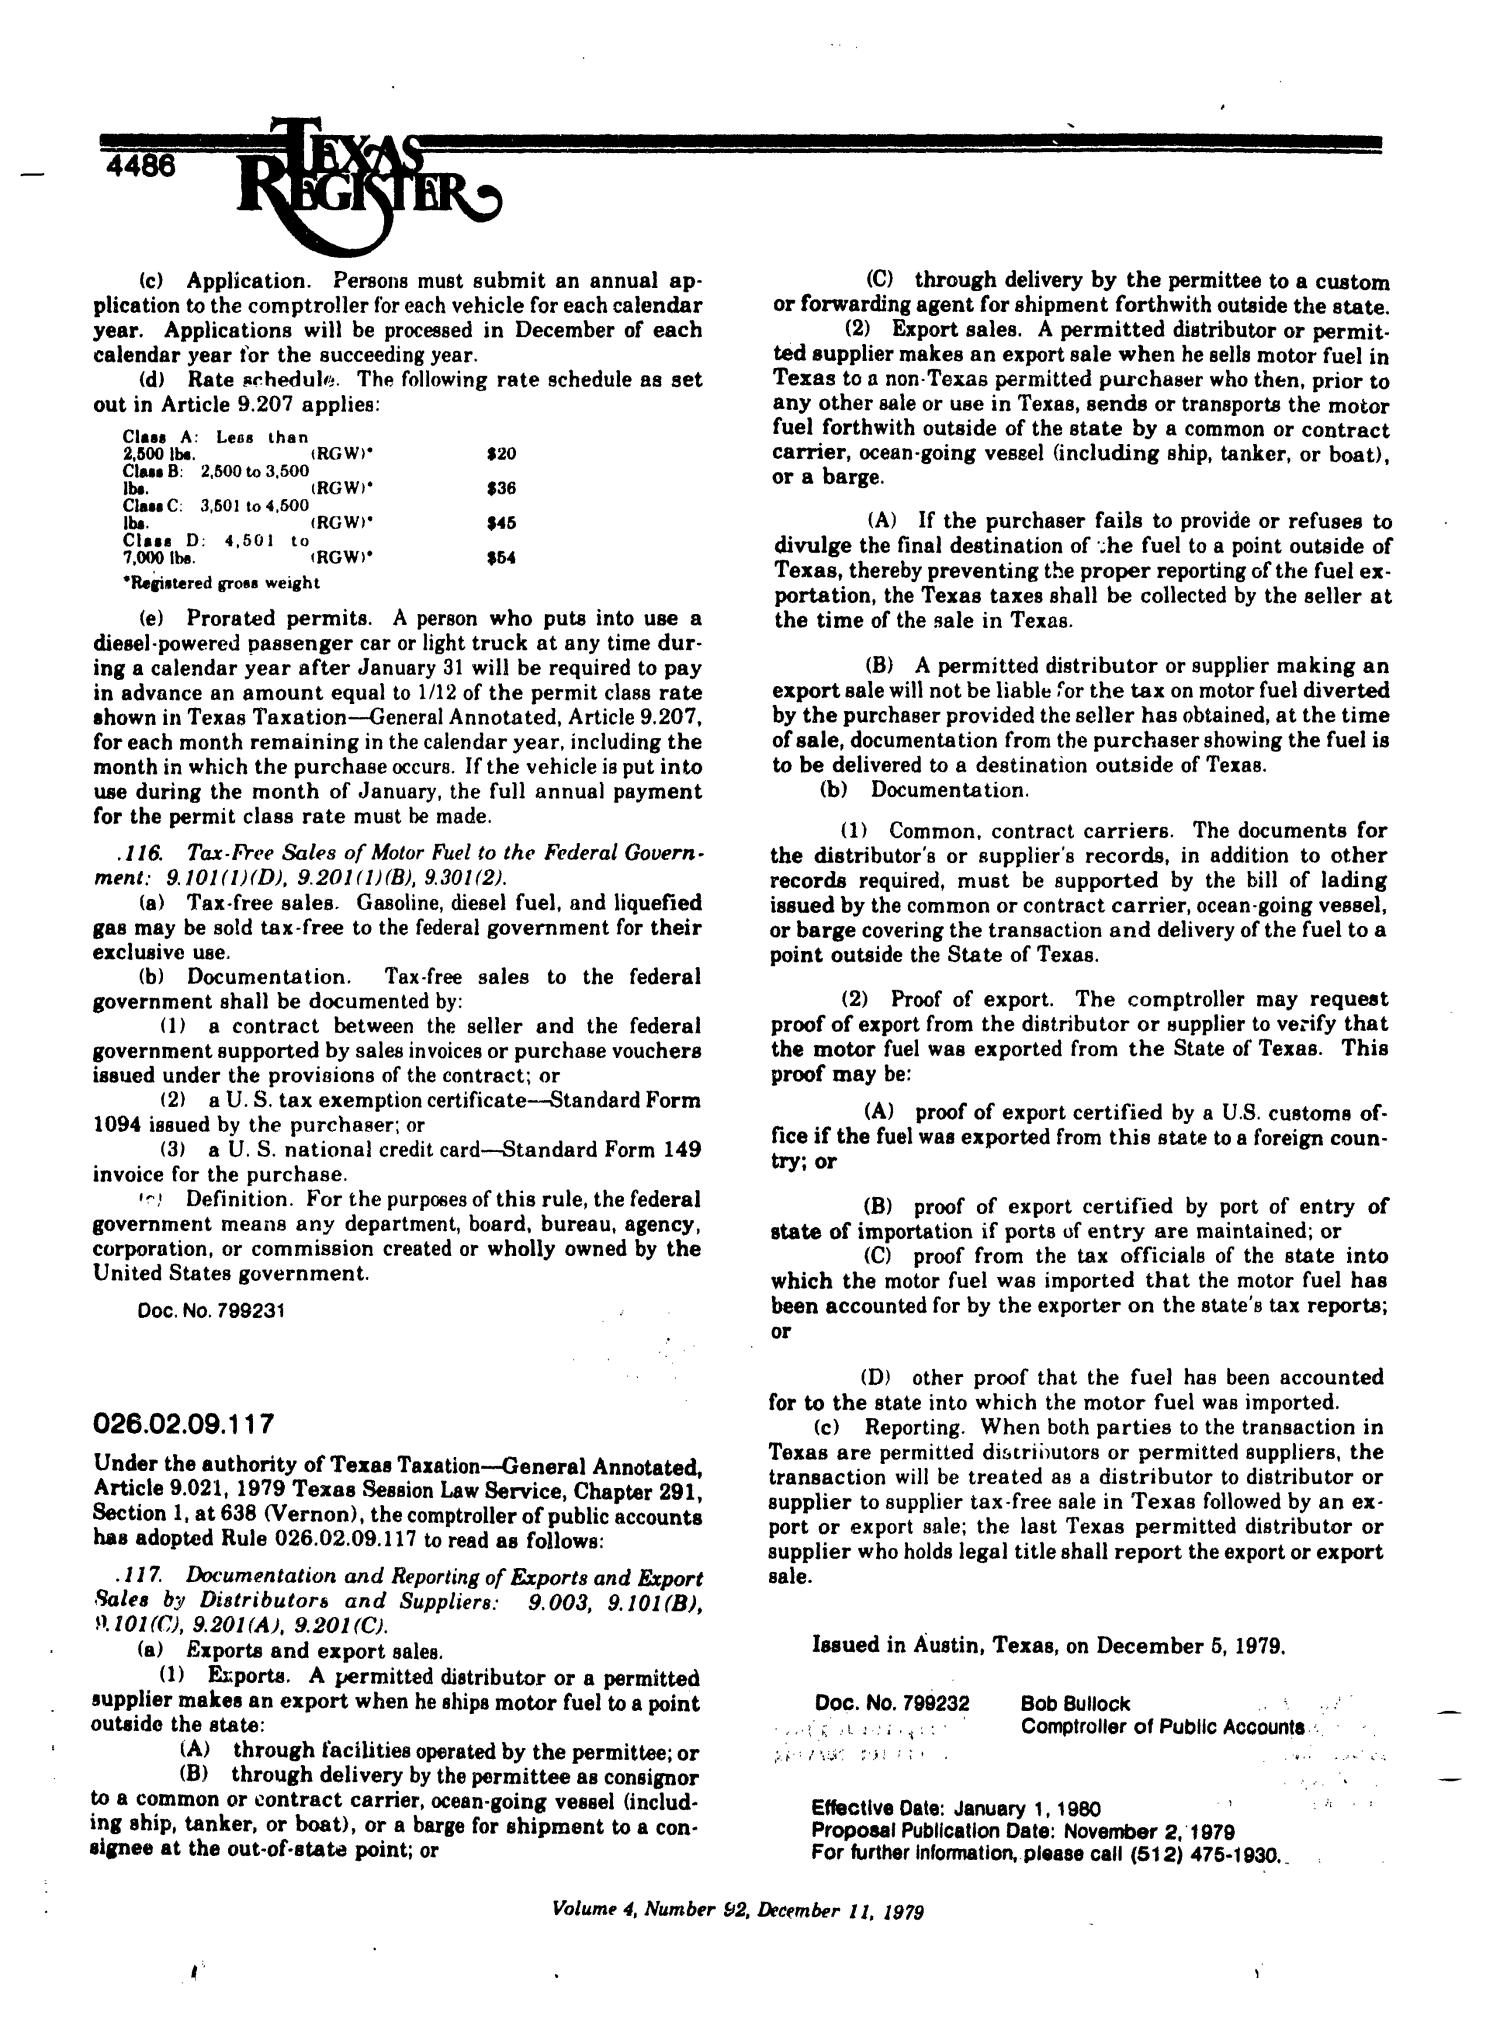 Texas Register, Volume 4, Number 92, Pages 4455-4526, December 11, 1979
                                                
                                                    4486
                                                